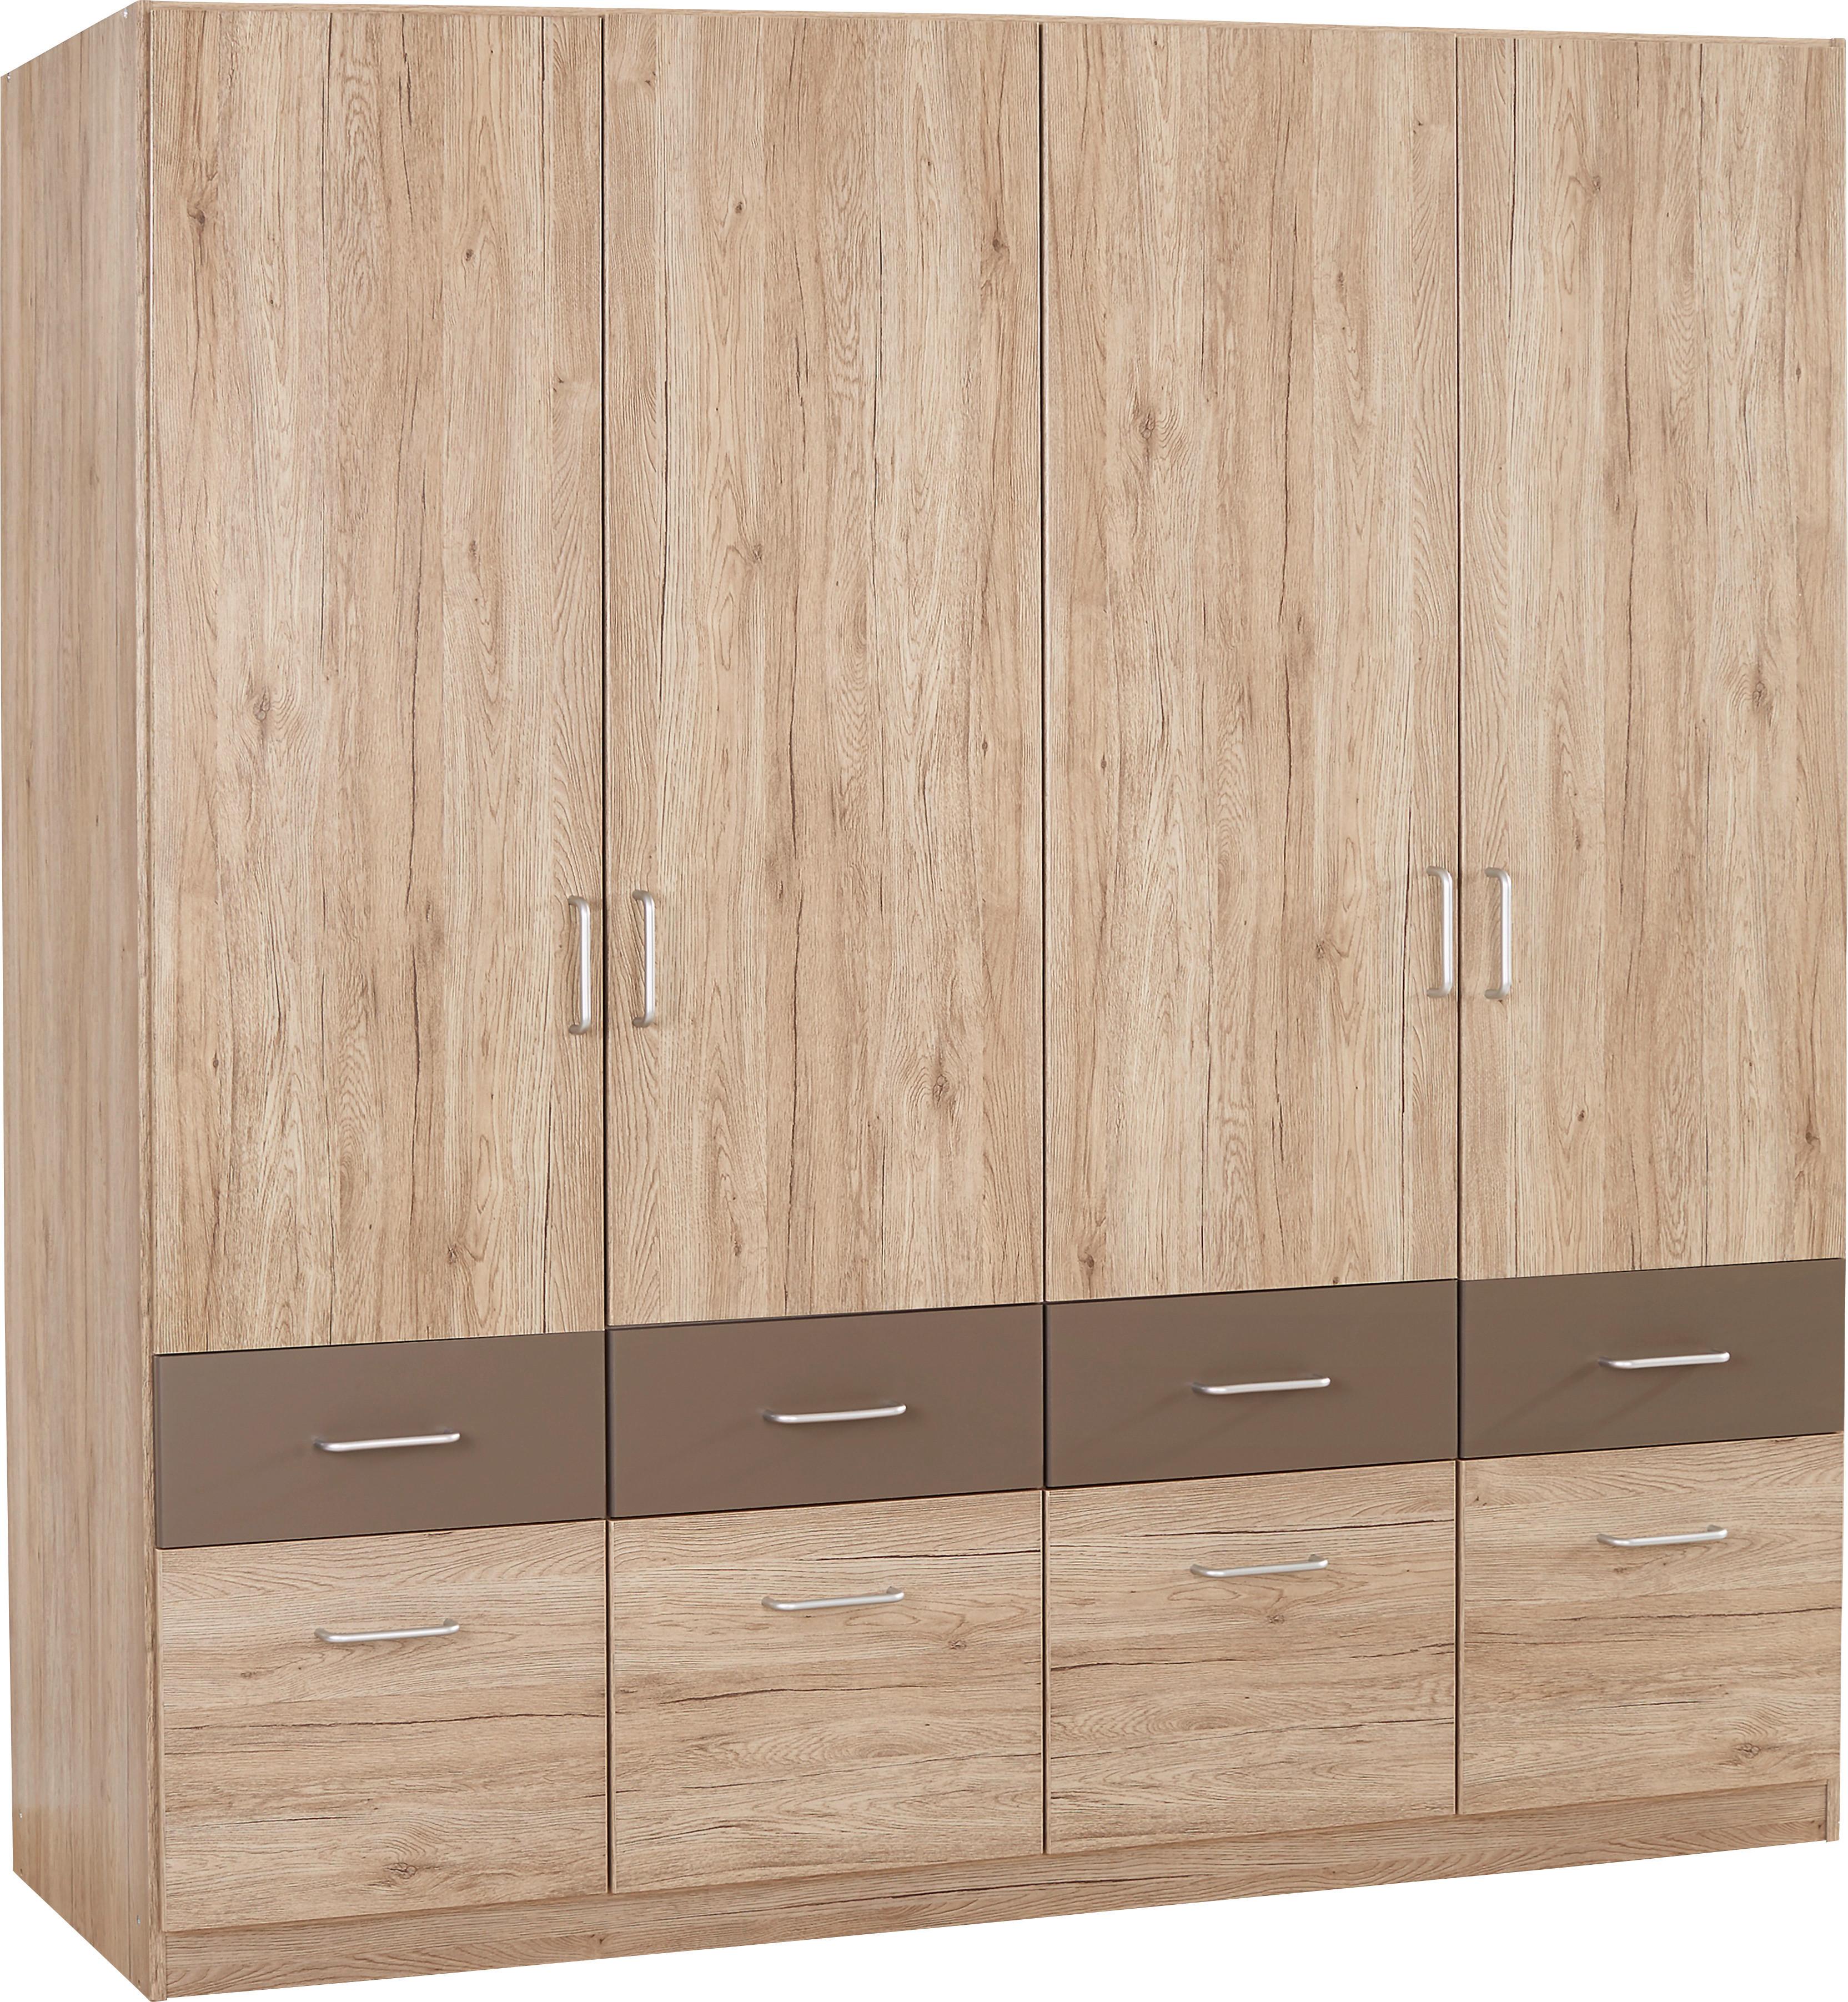 Dulap de haine Aalen-Extra - culoare lemn stejar/gri, Konventionell, material pe bază de lemn (181/197/54cm)